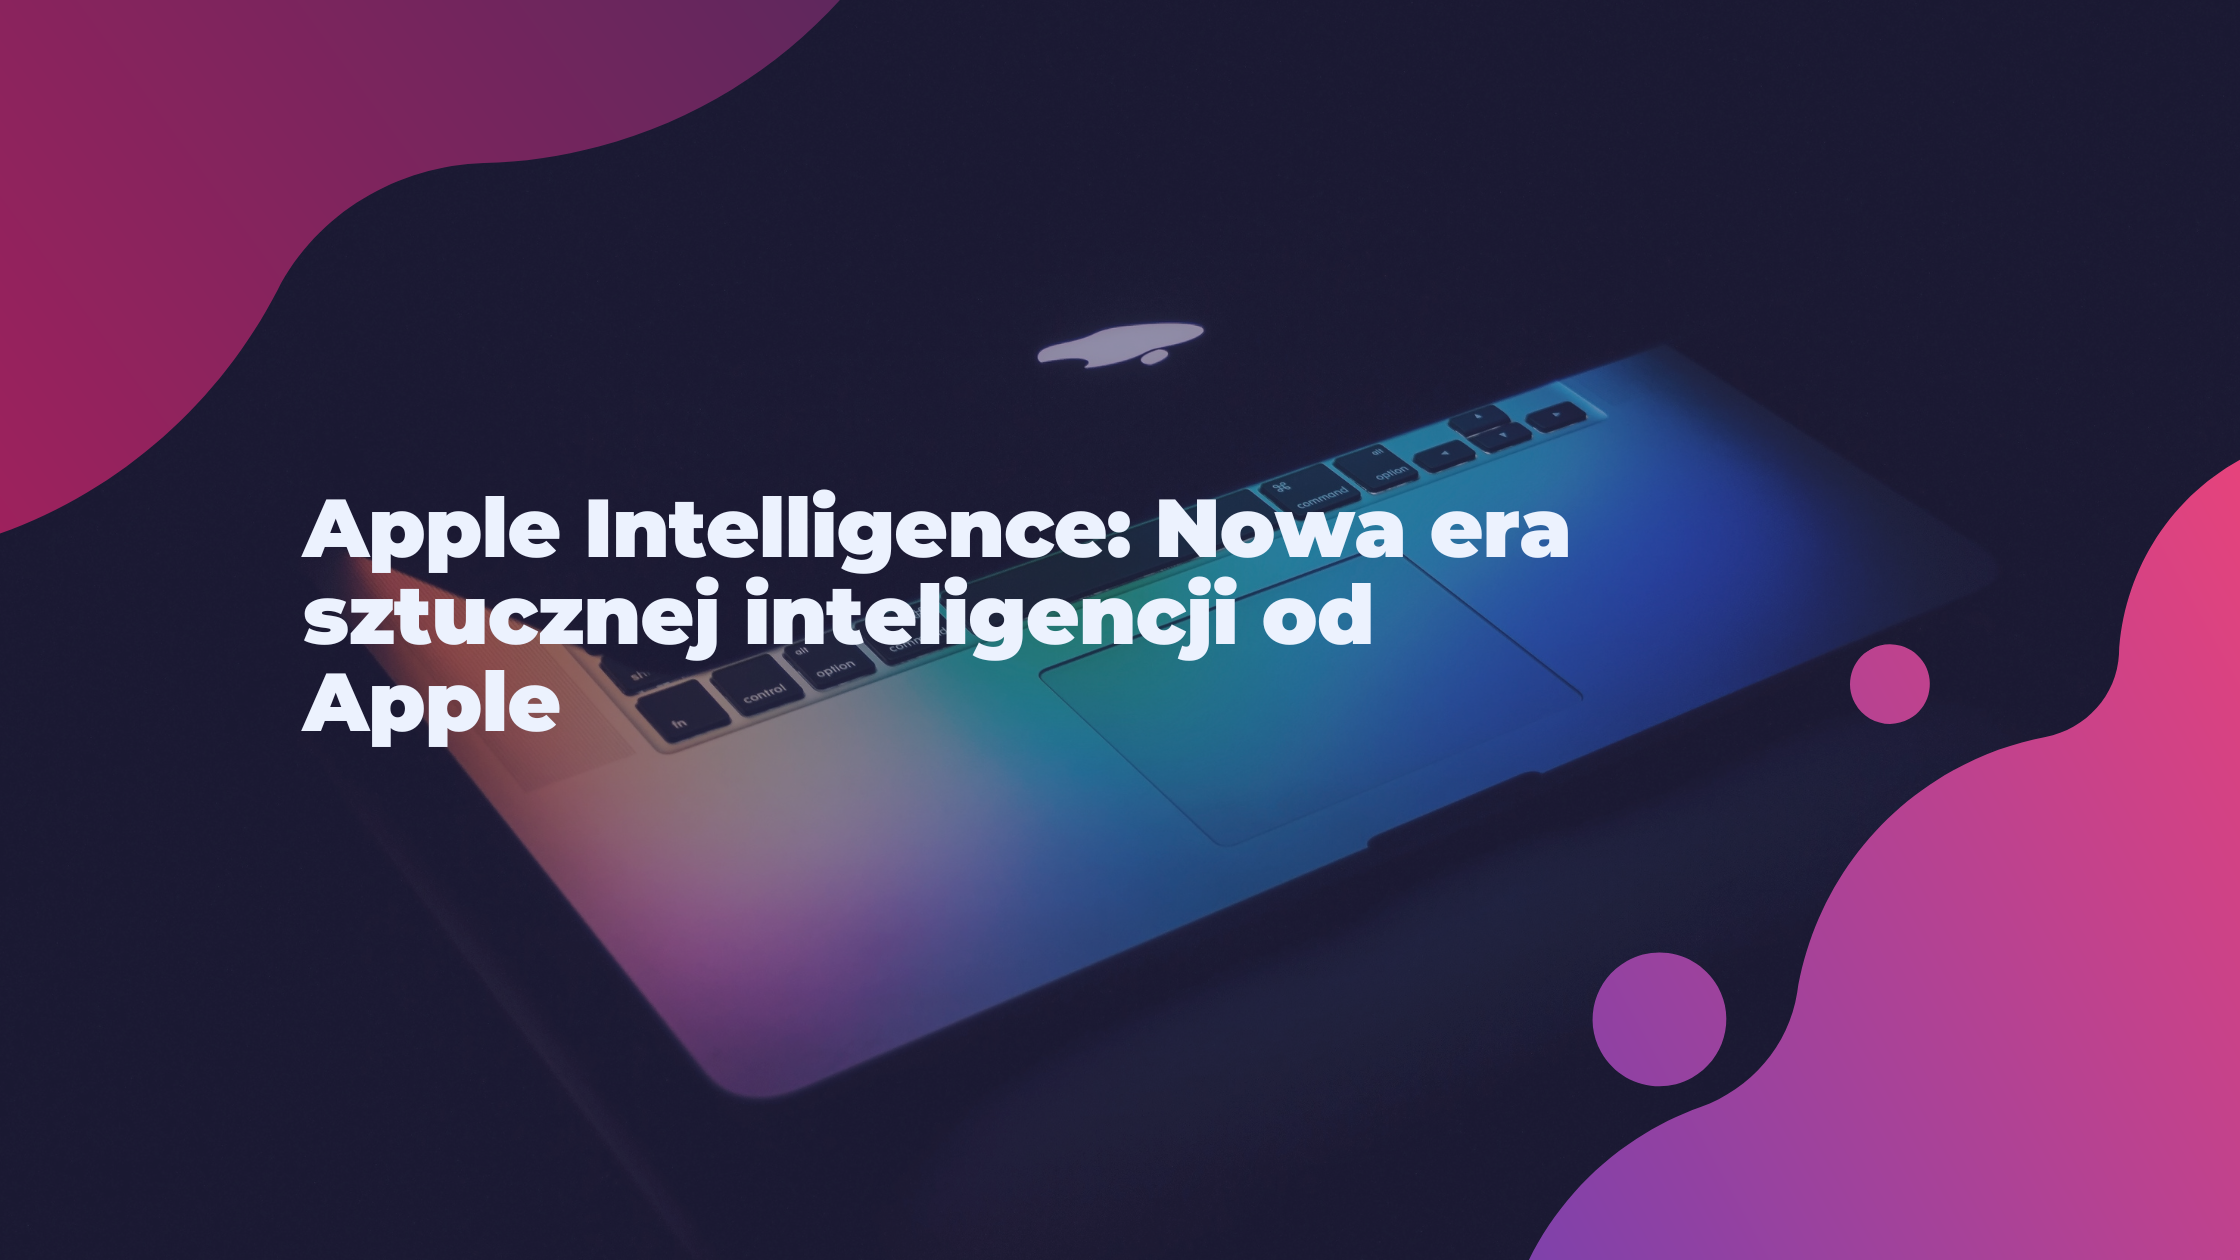 Apple Intelligence: Nowa era sztucznej inteligencji od Apple